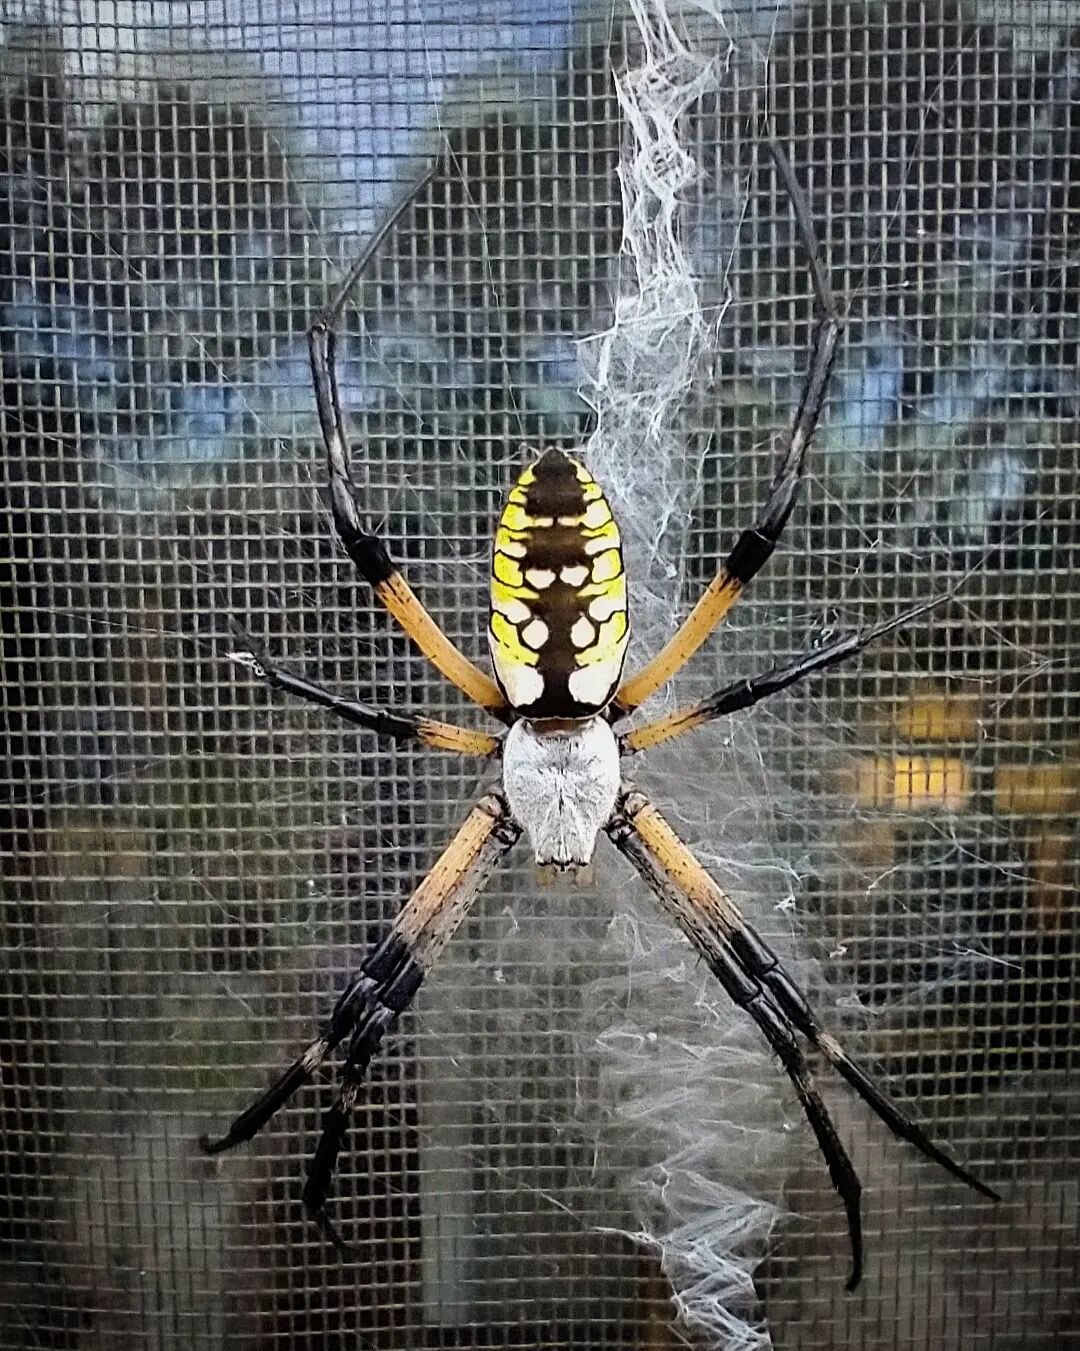 Zipper Spider on a Screen Door
#spider #zipperspider #spiderweb